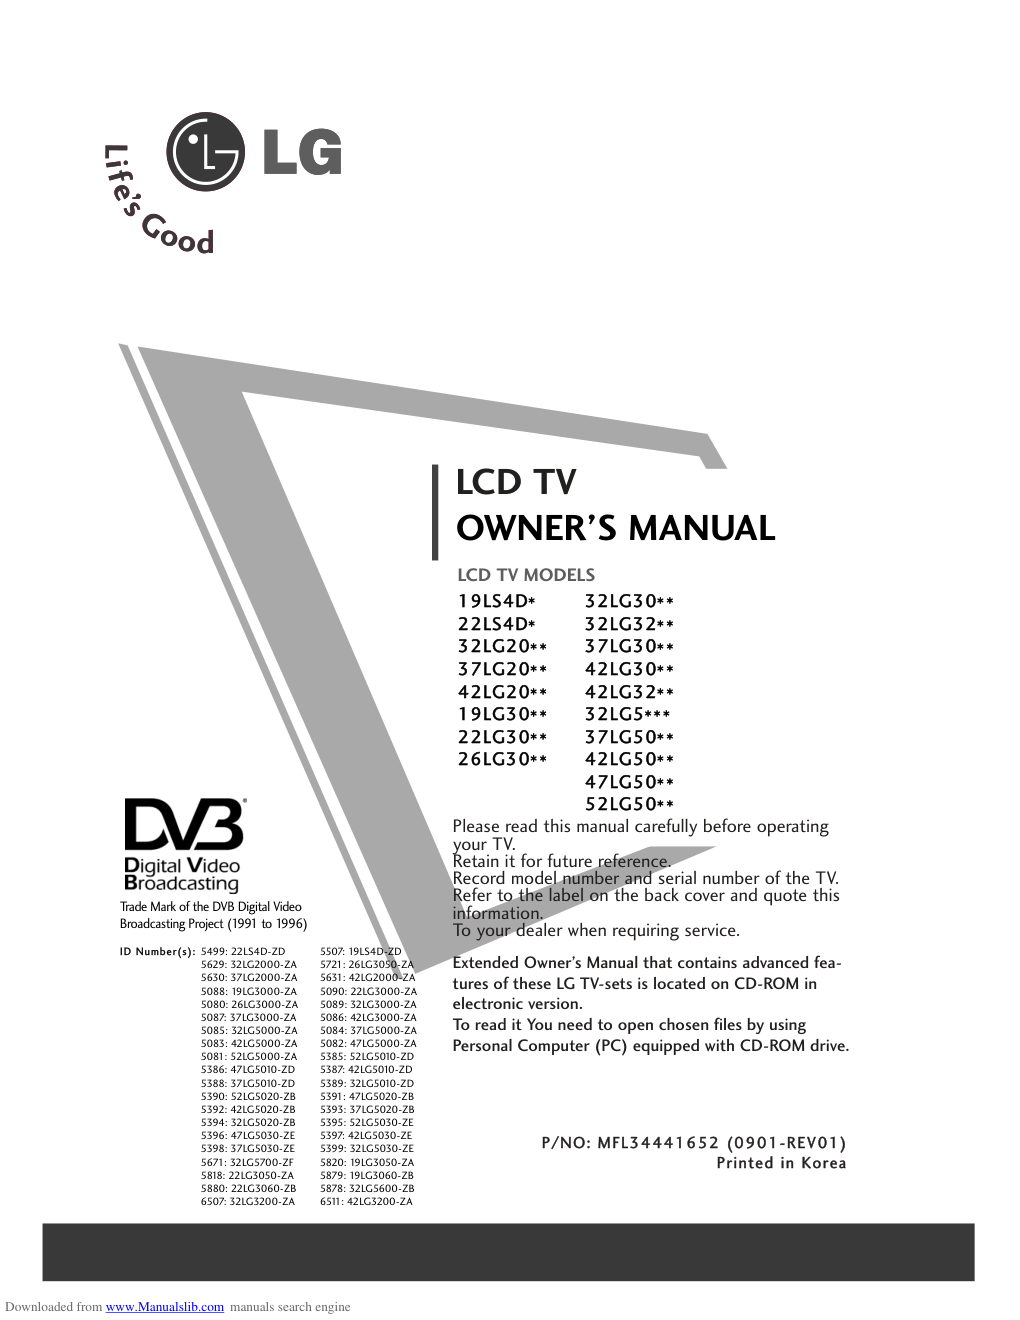 LG 52LG5010-ZD液晶电视用户手册-0